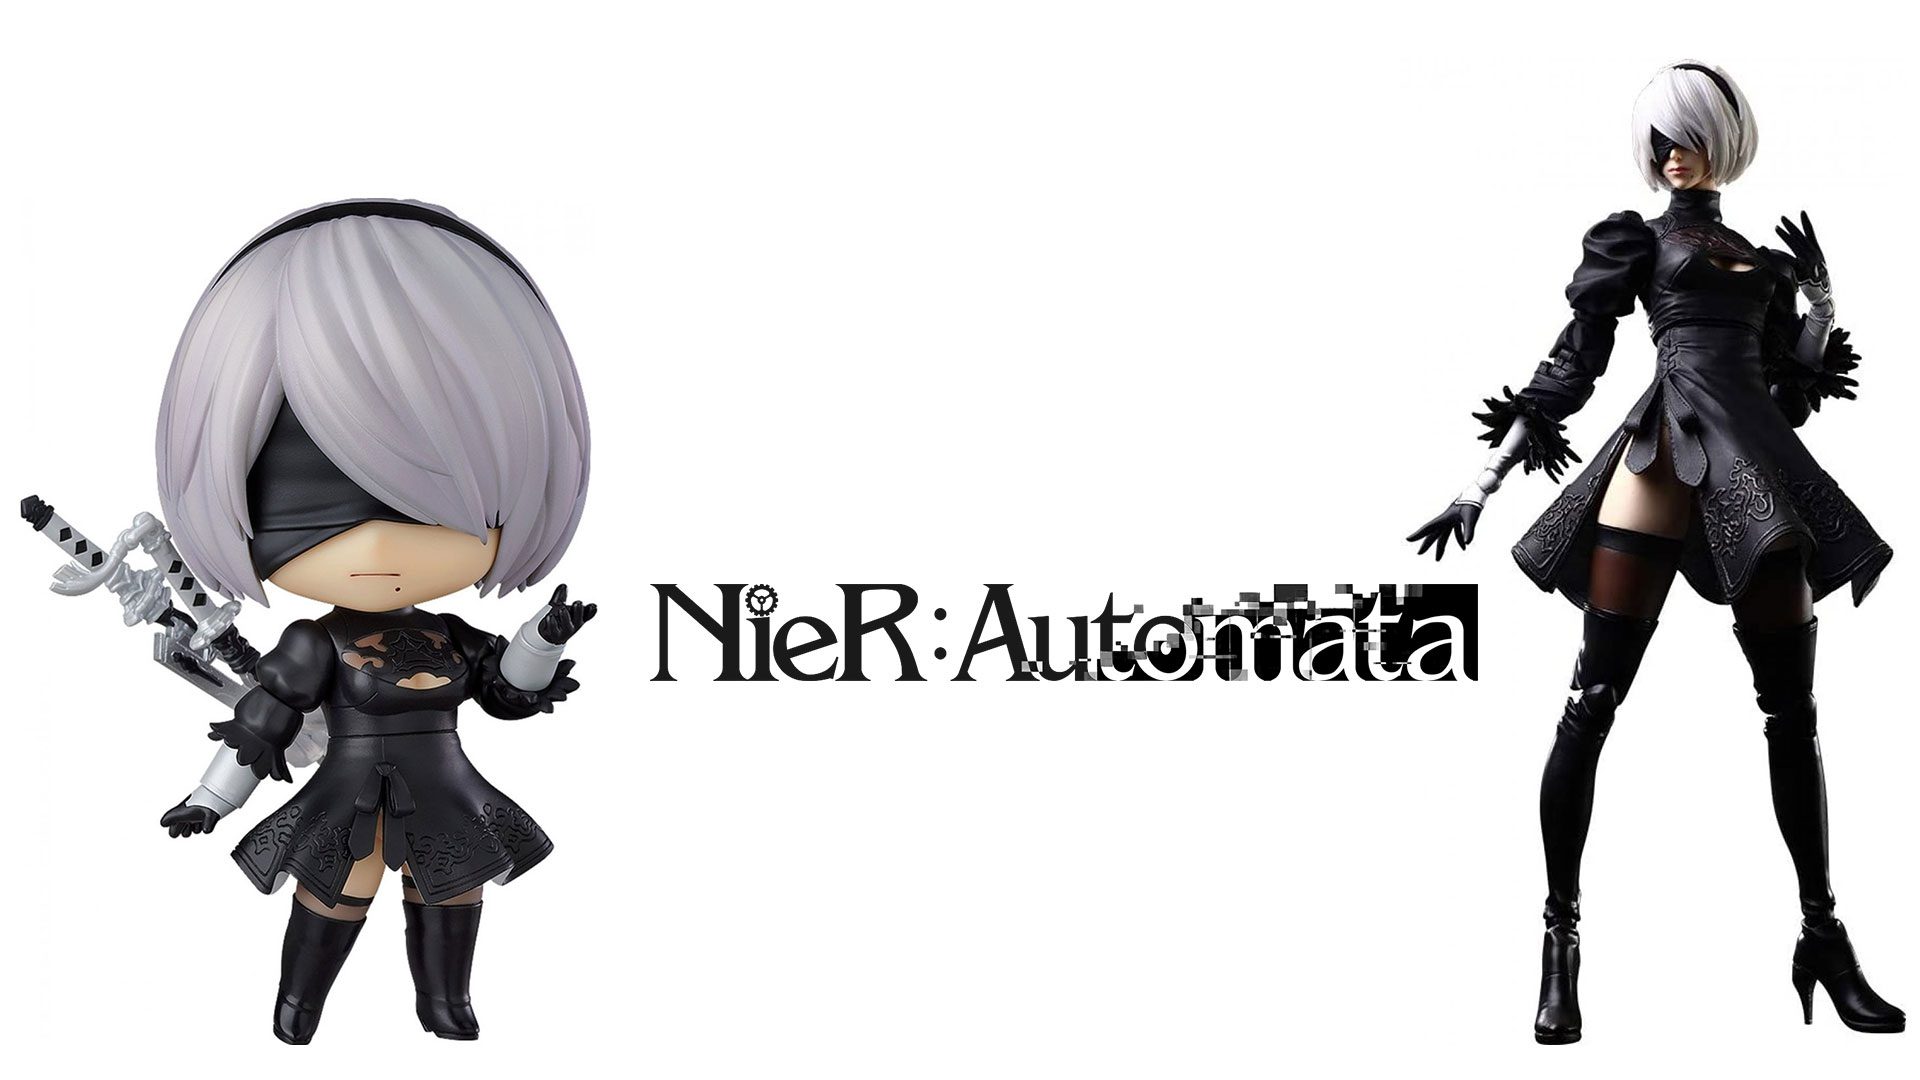 Nier: Automata action figures